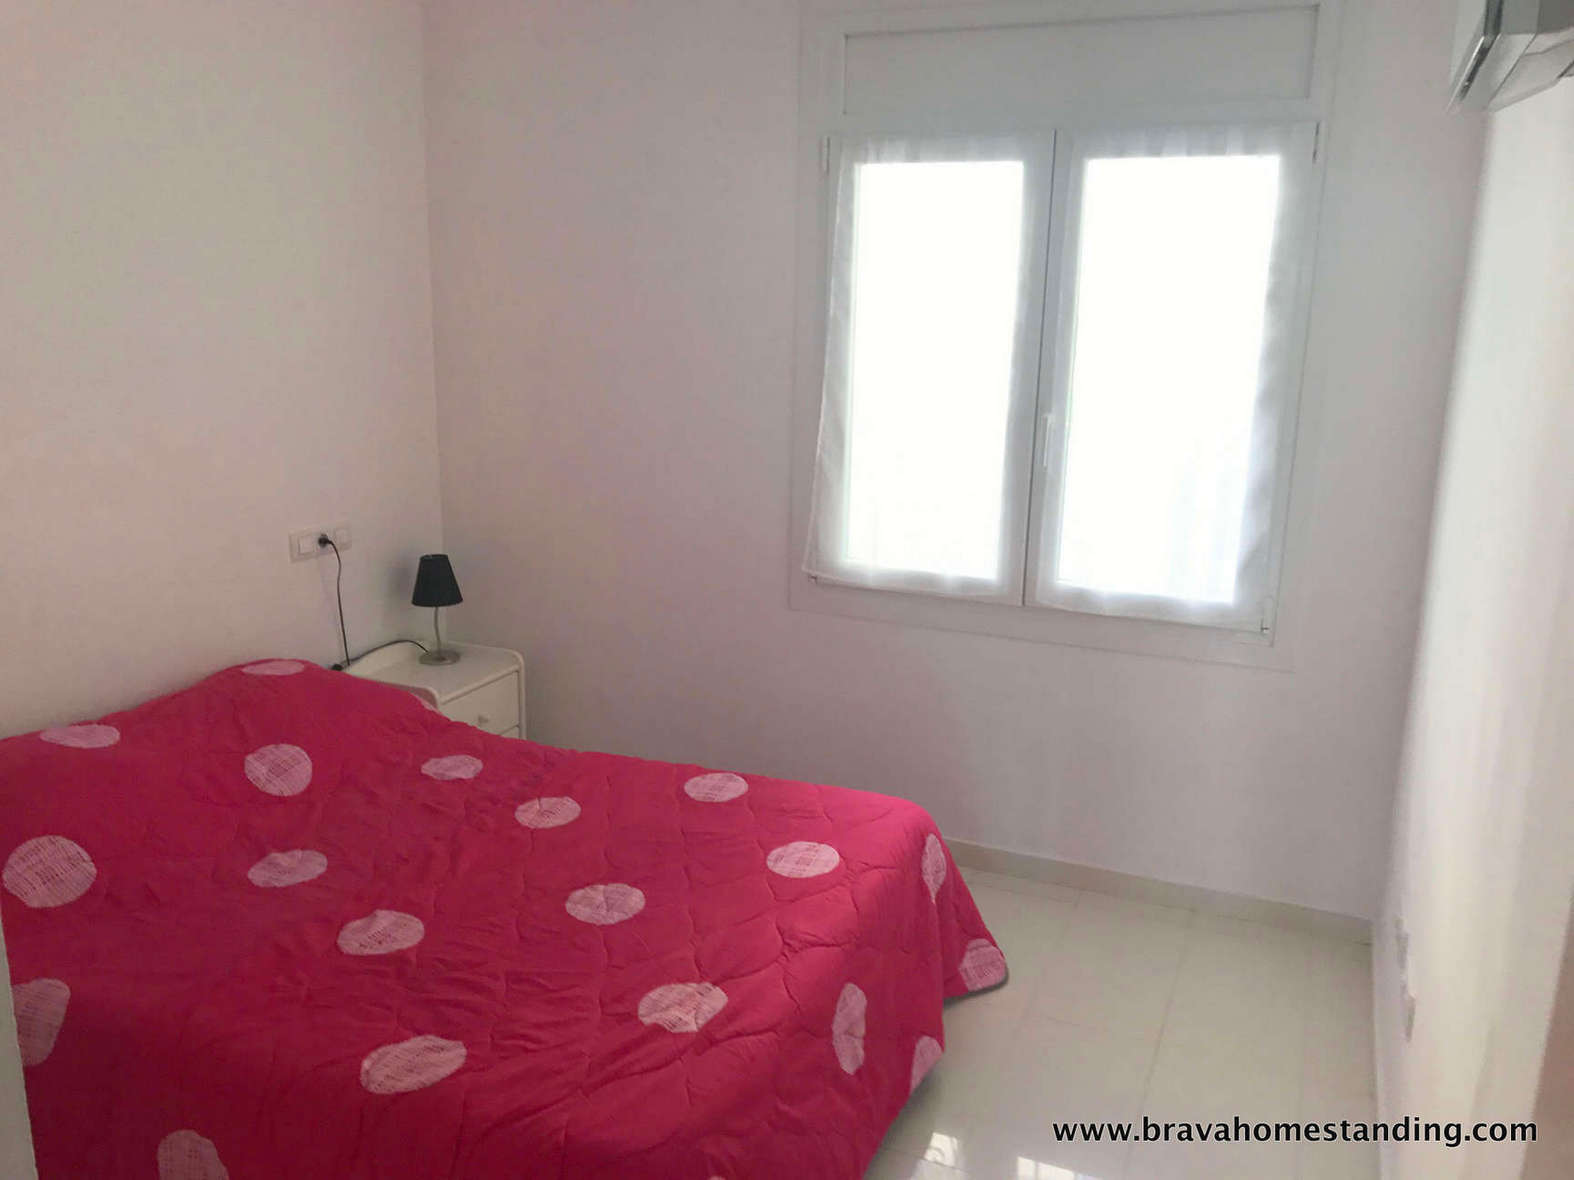 Precioso apartamento con vistas al mar en venta en Rosas